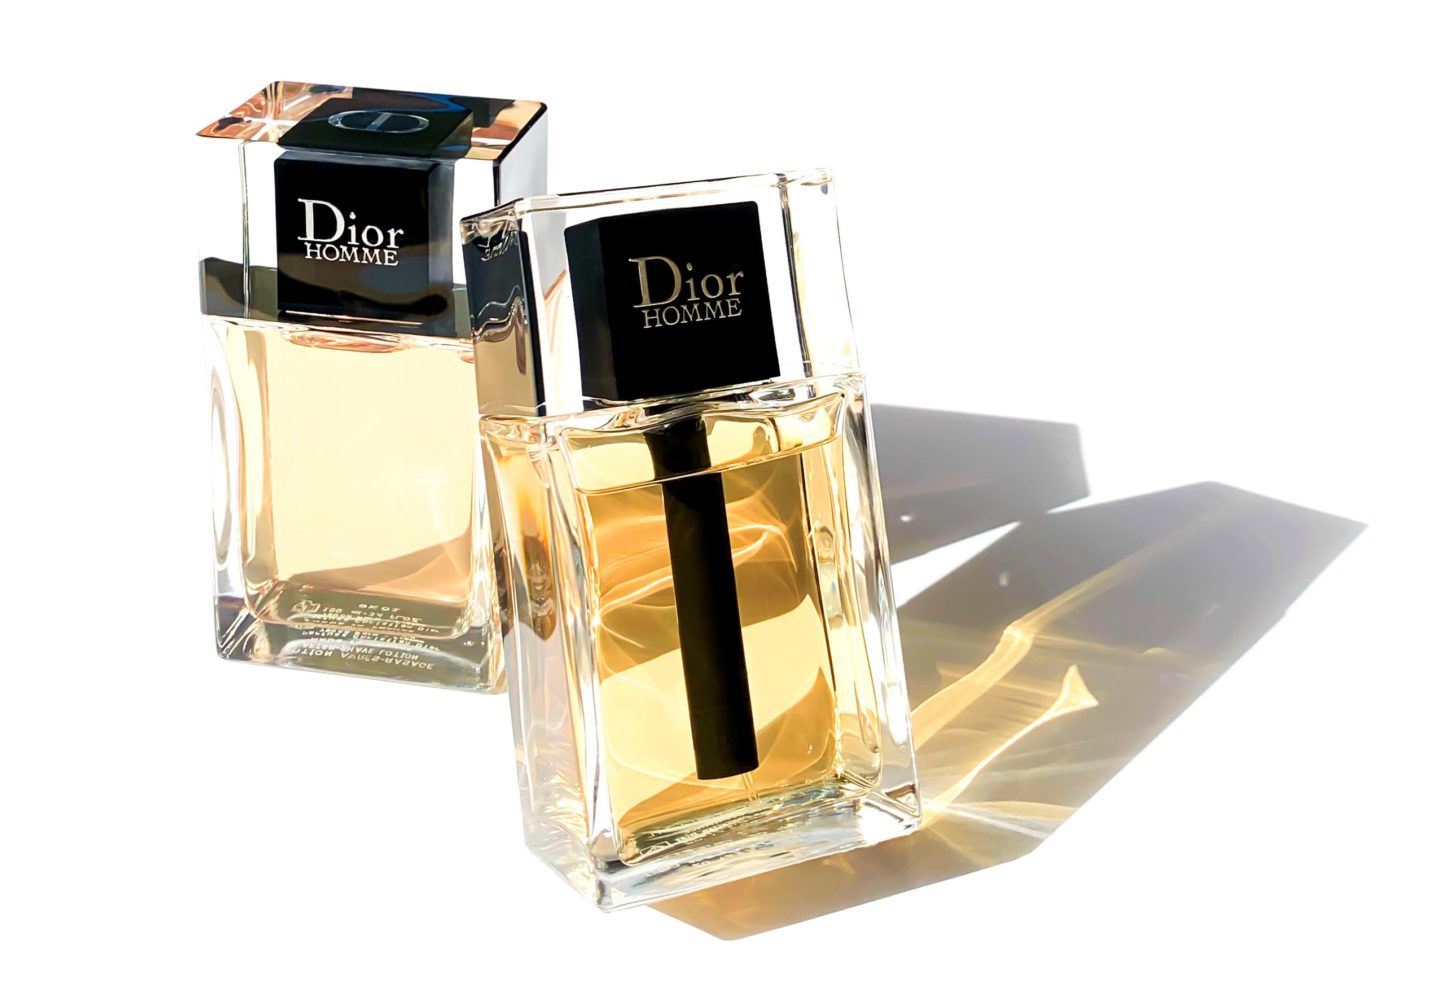 dior homme parfum reformulated